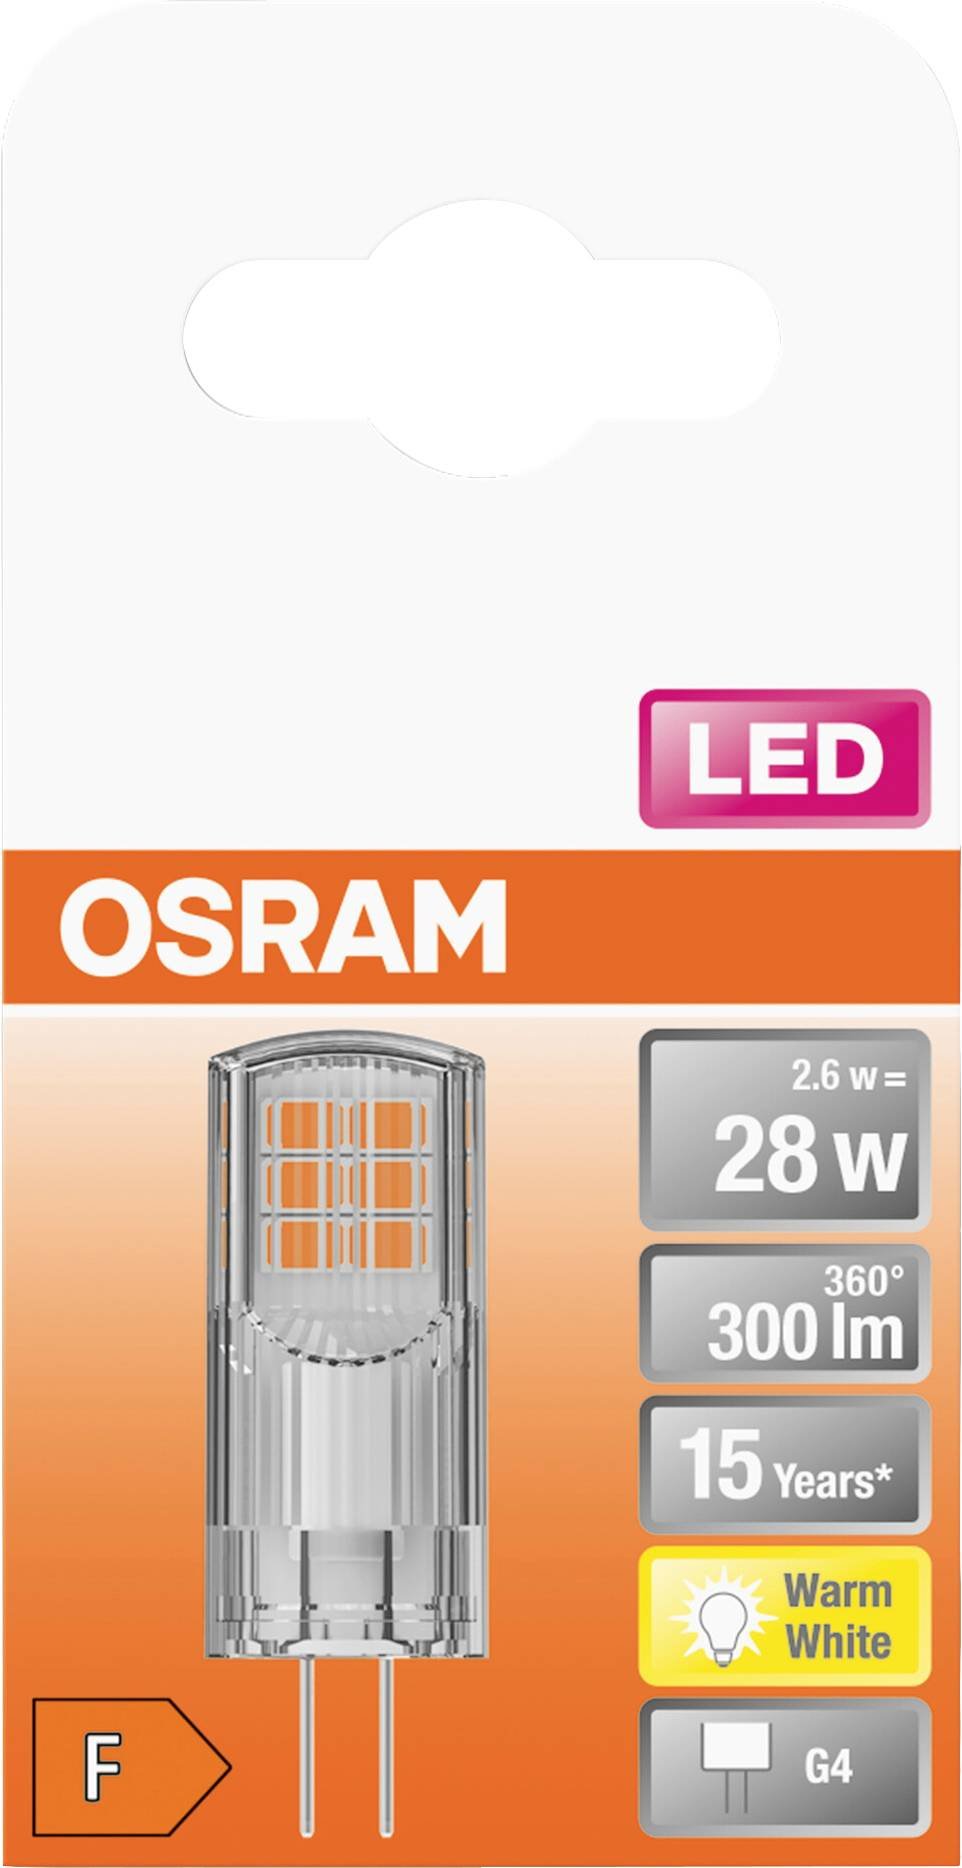 OSRAM LED kapsulinė lemputė PIN 28, G4, 2,6W, 2700 K, 300 lm, šiltai baltos sp. - 2